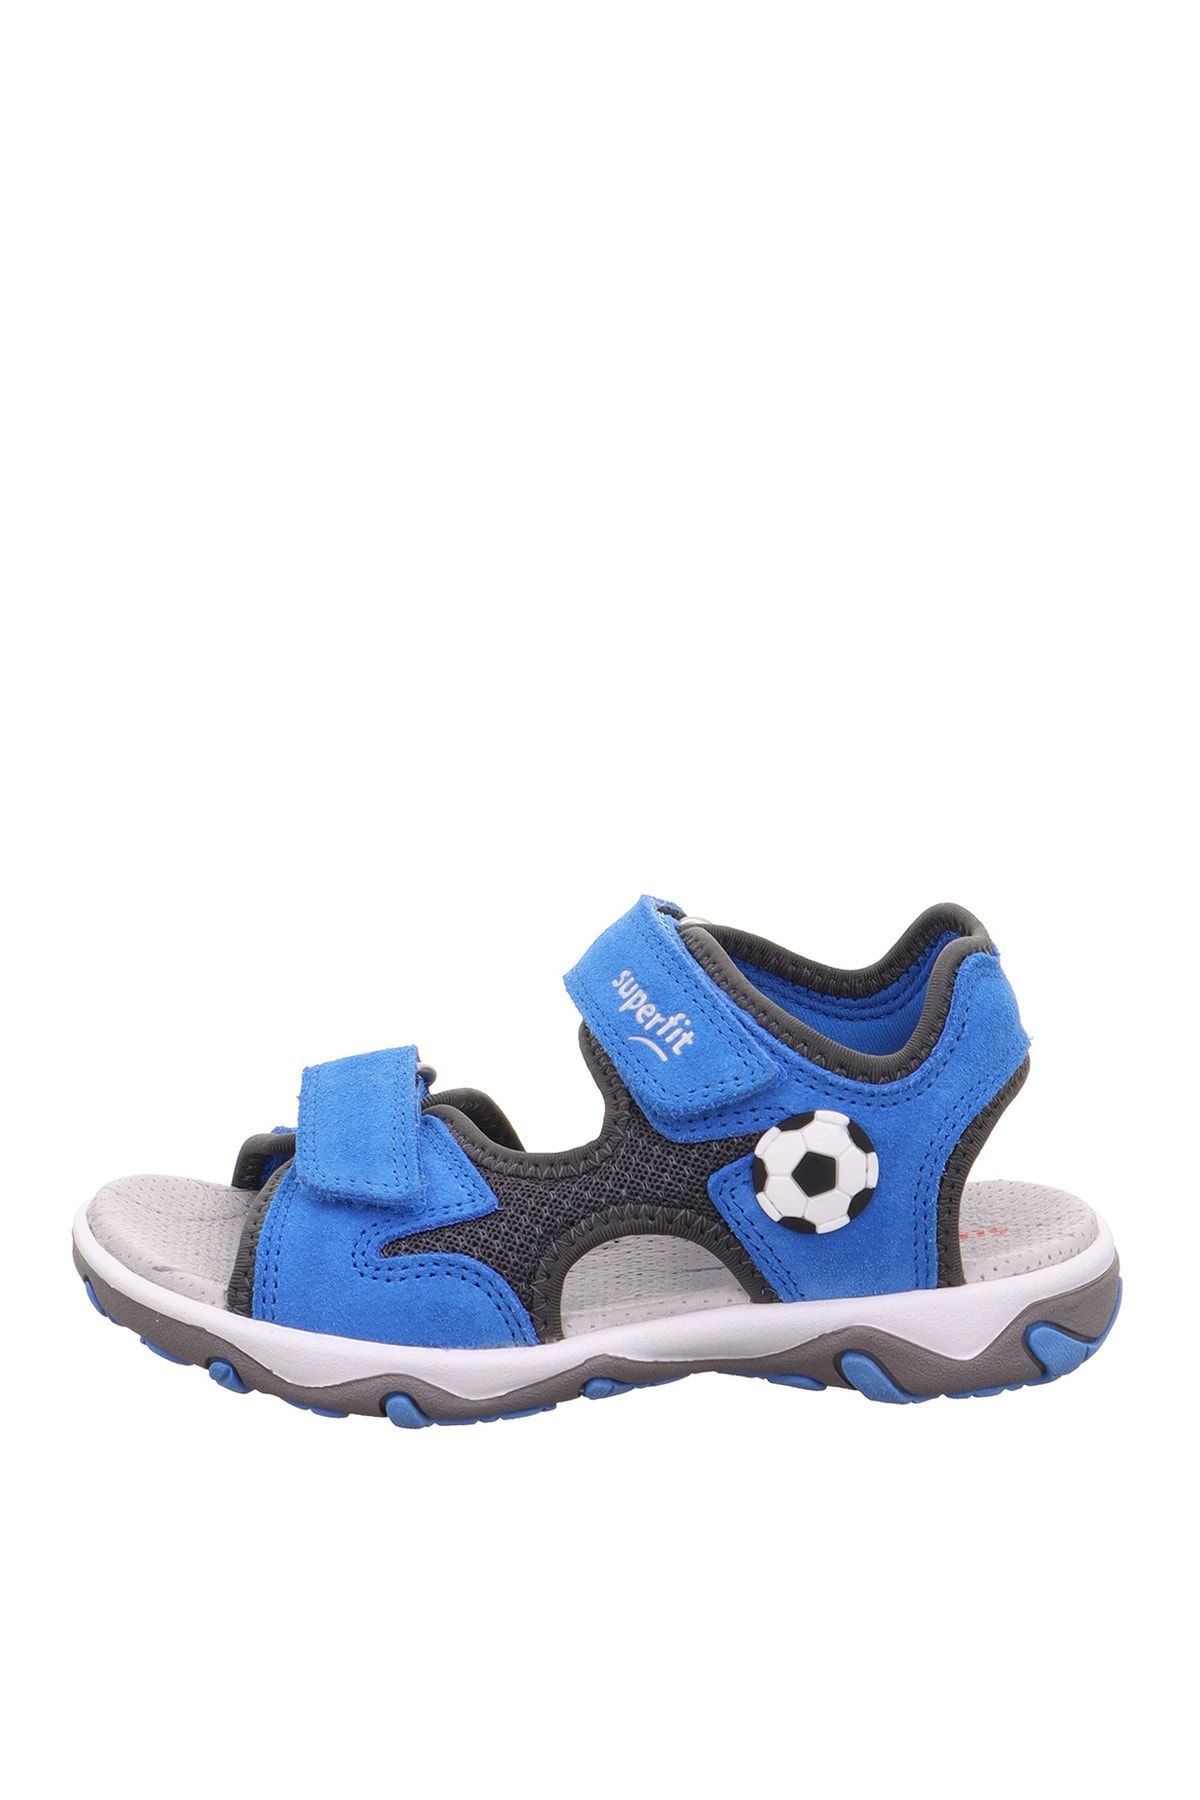 Superfit Mavi - Gri Erkek Çocuk Sandalet Mıke 3.0 1-009469-8040-3